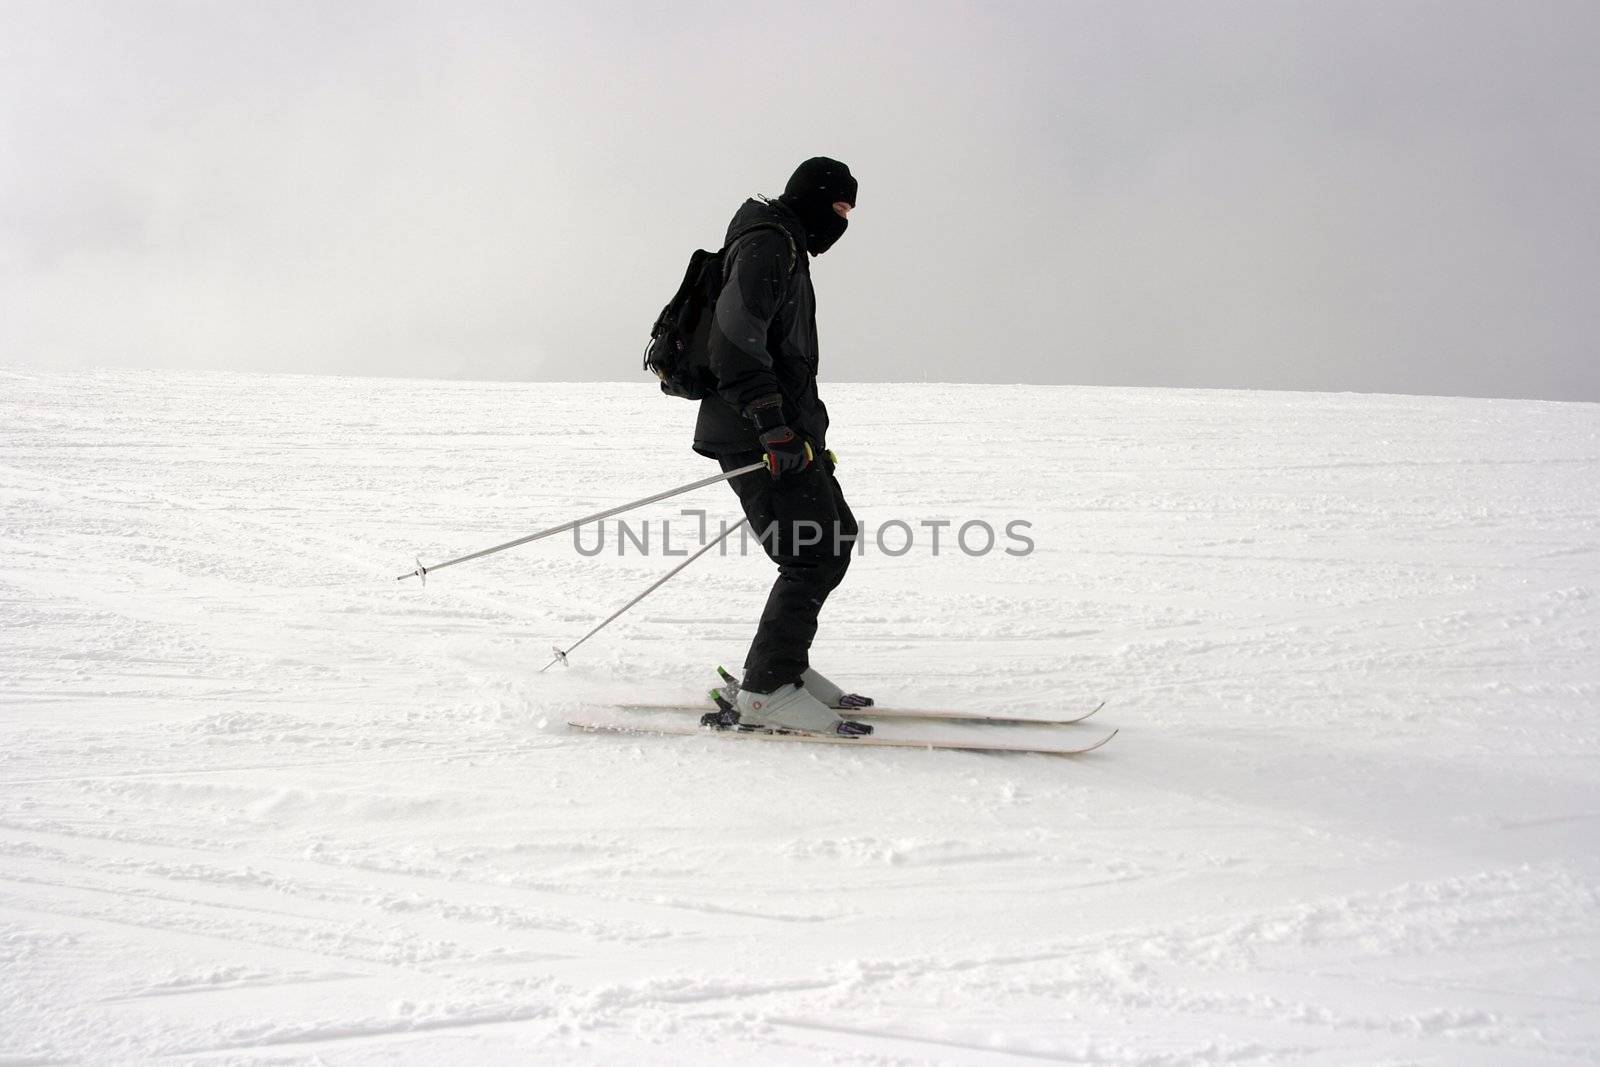 Skier sliding down the slope